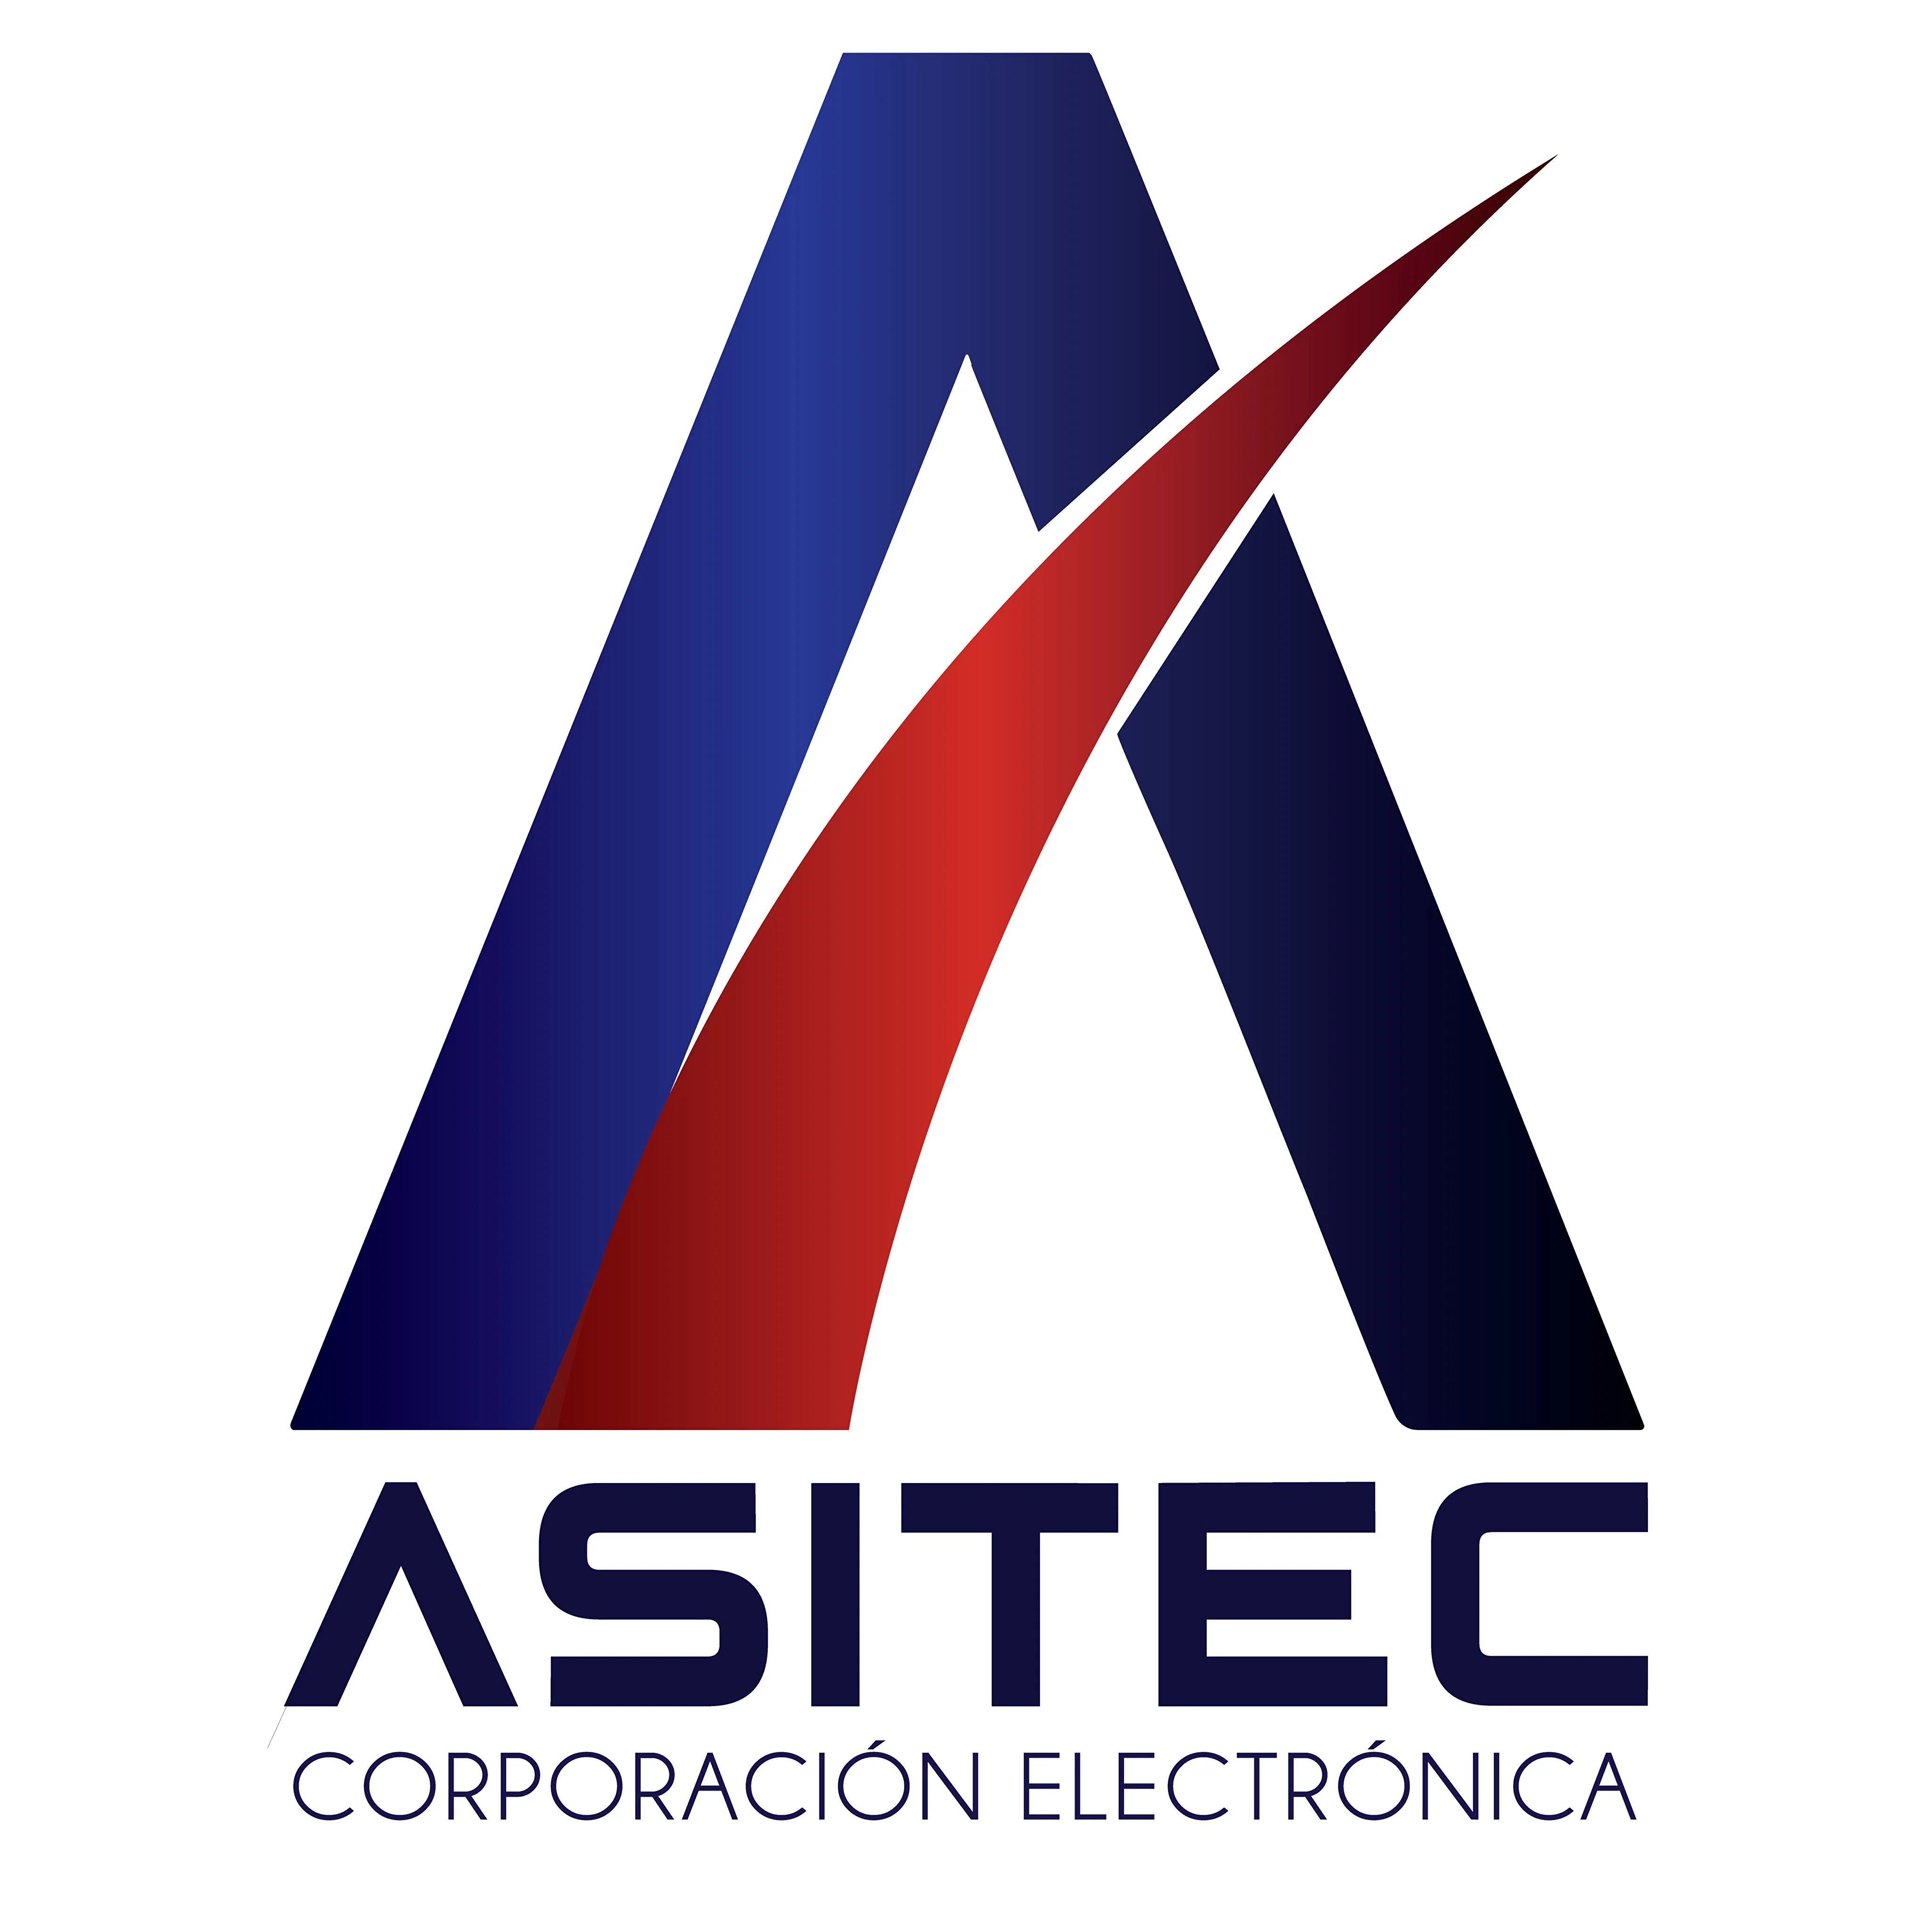 ASITEC-2678